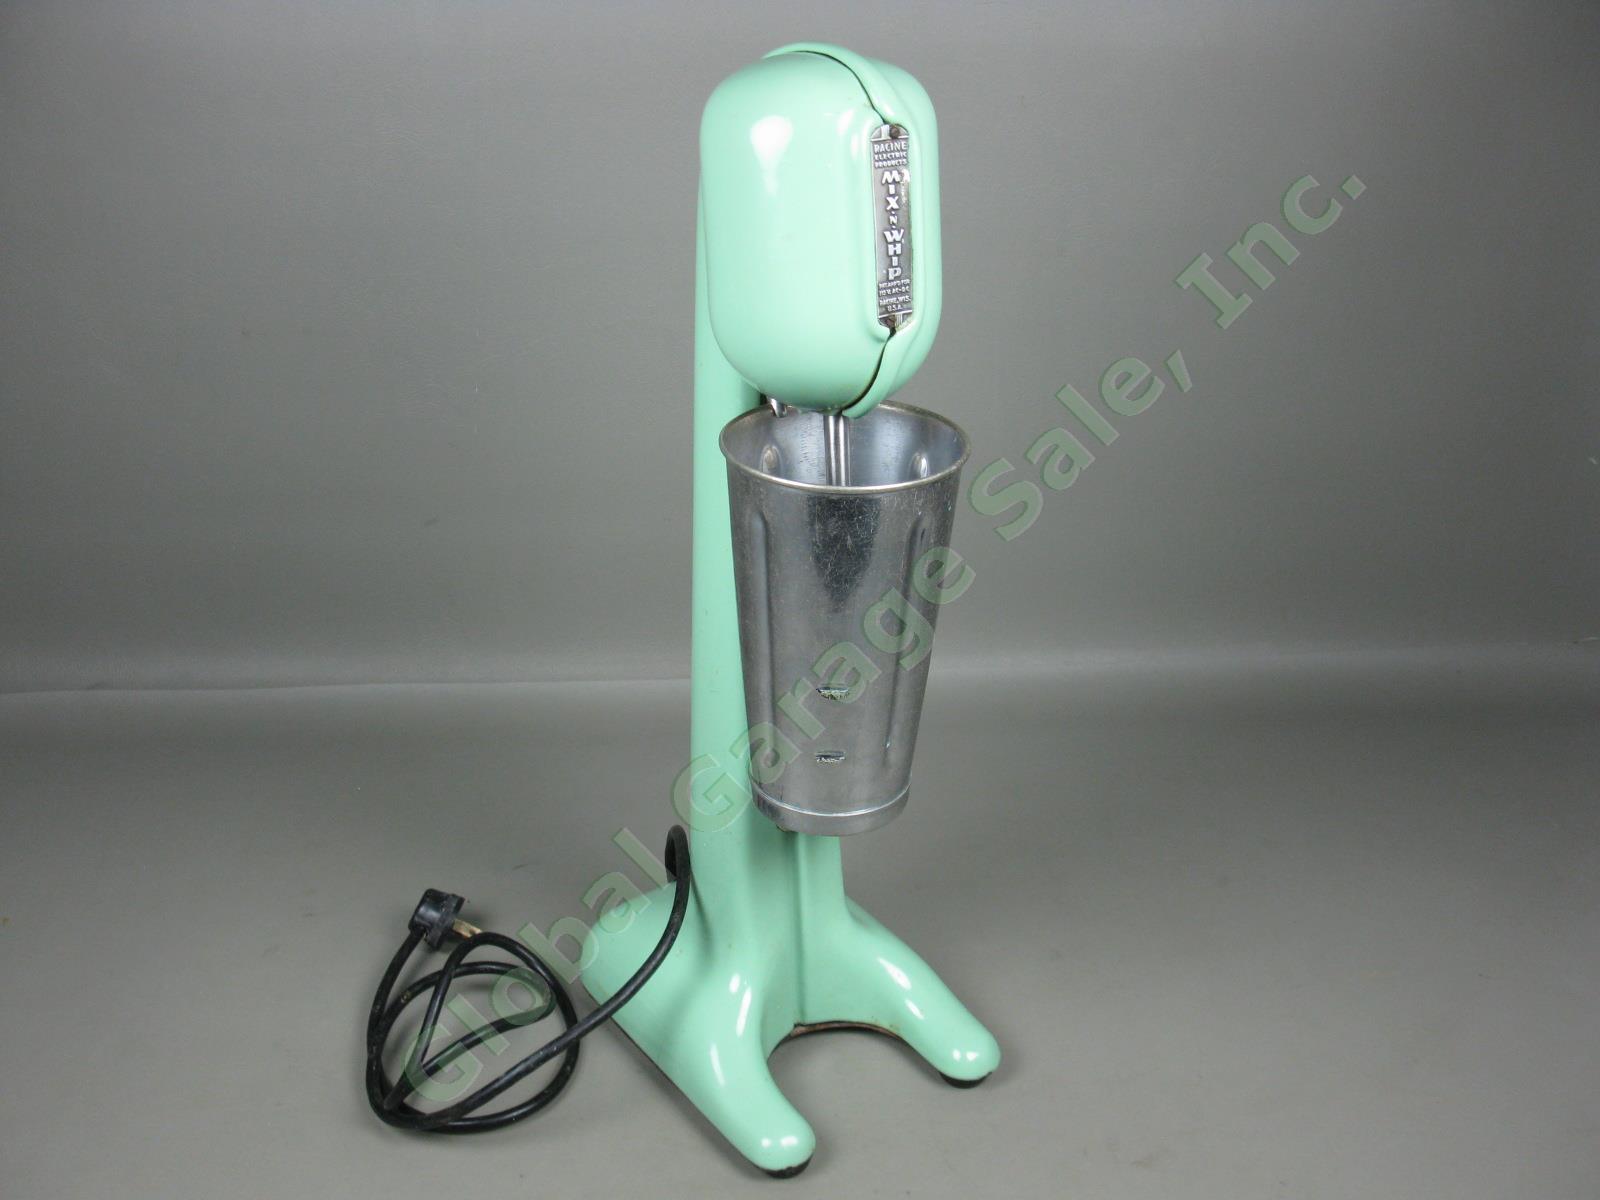 Vtg Racine Mix N Whip Green Porcelain Malt Milkshake Maker Mixer Machine Blender